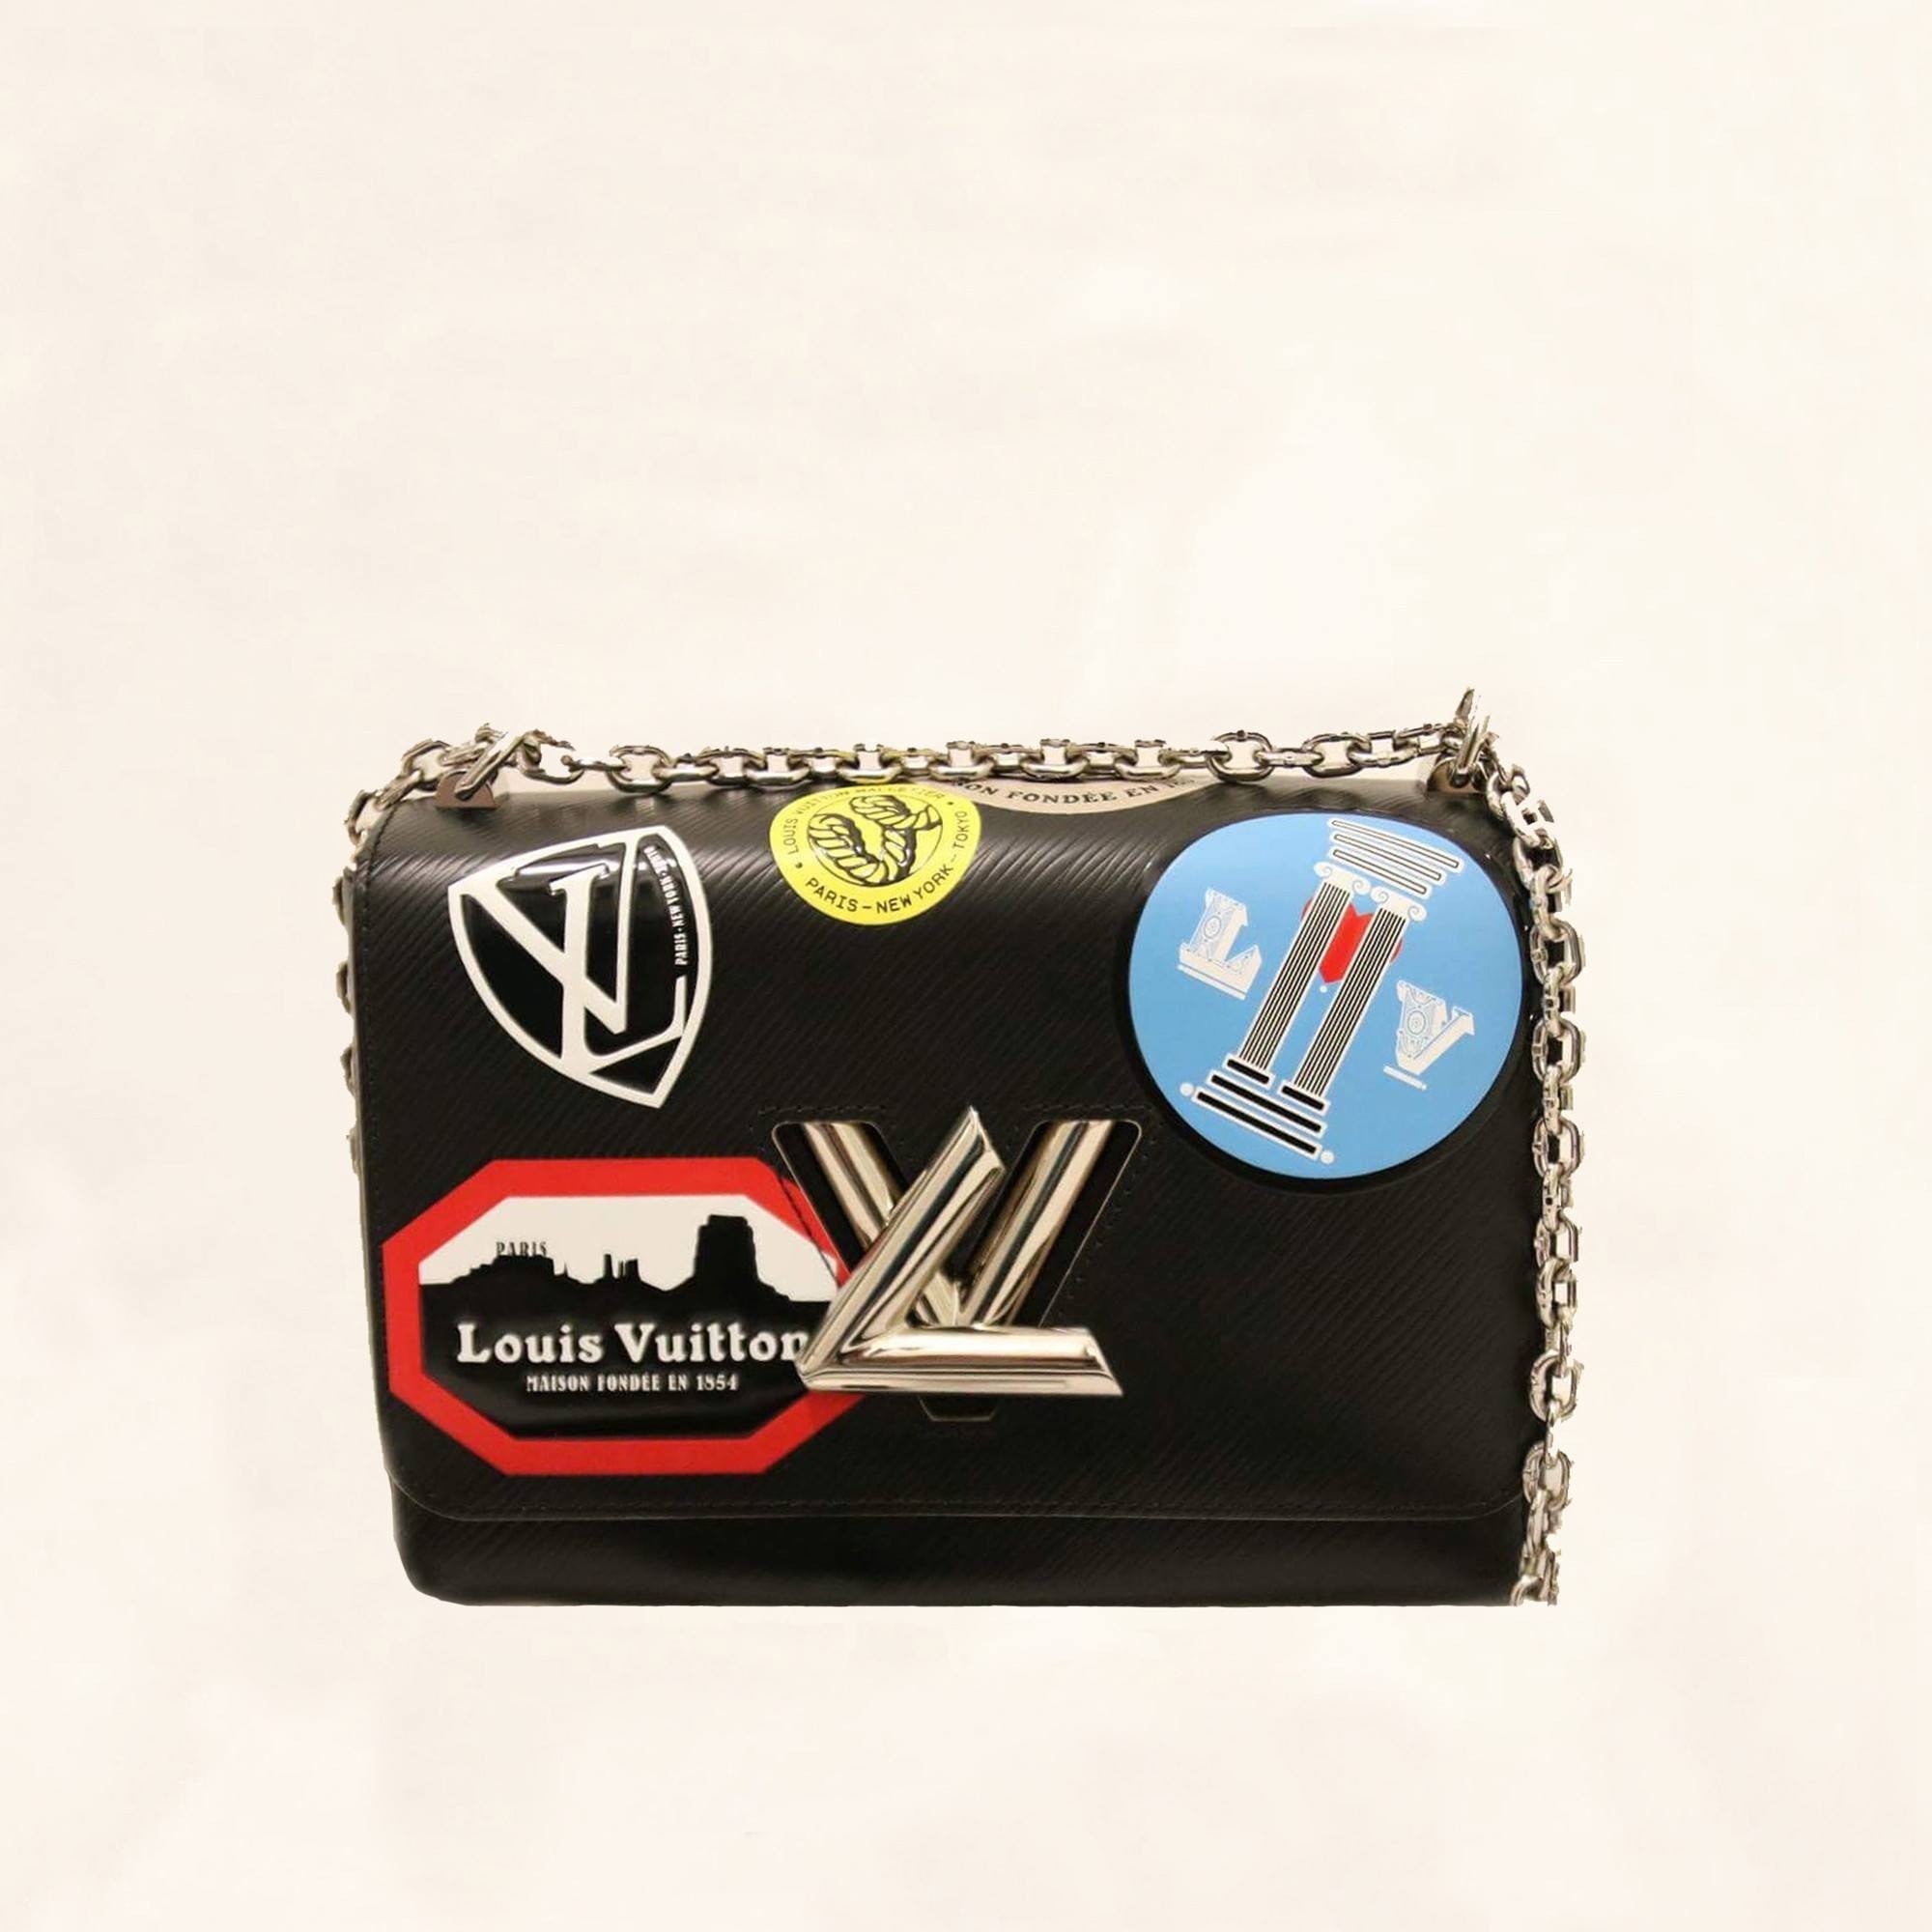 Louis Vuitton Black Epi Leather Limited Edition World Tour Petite Malle Bag